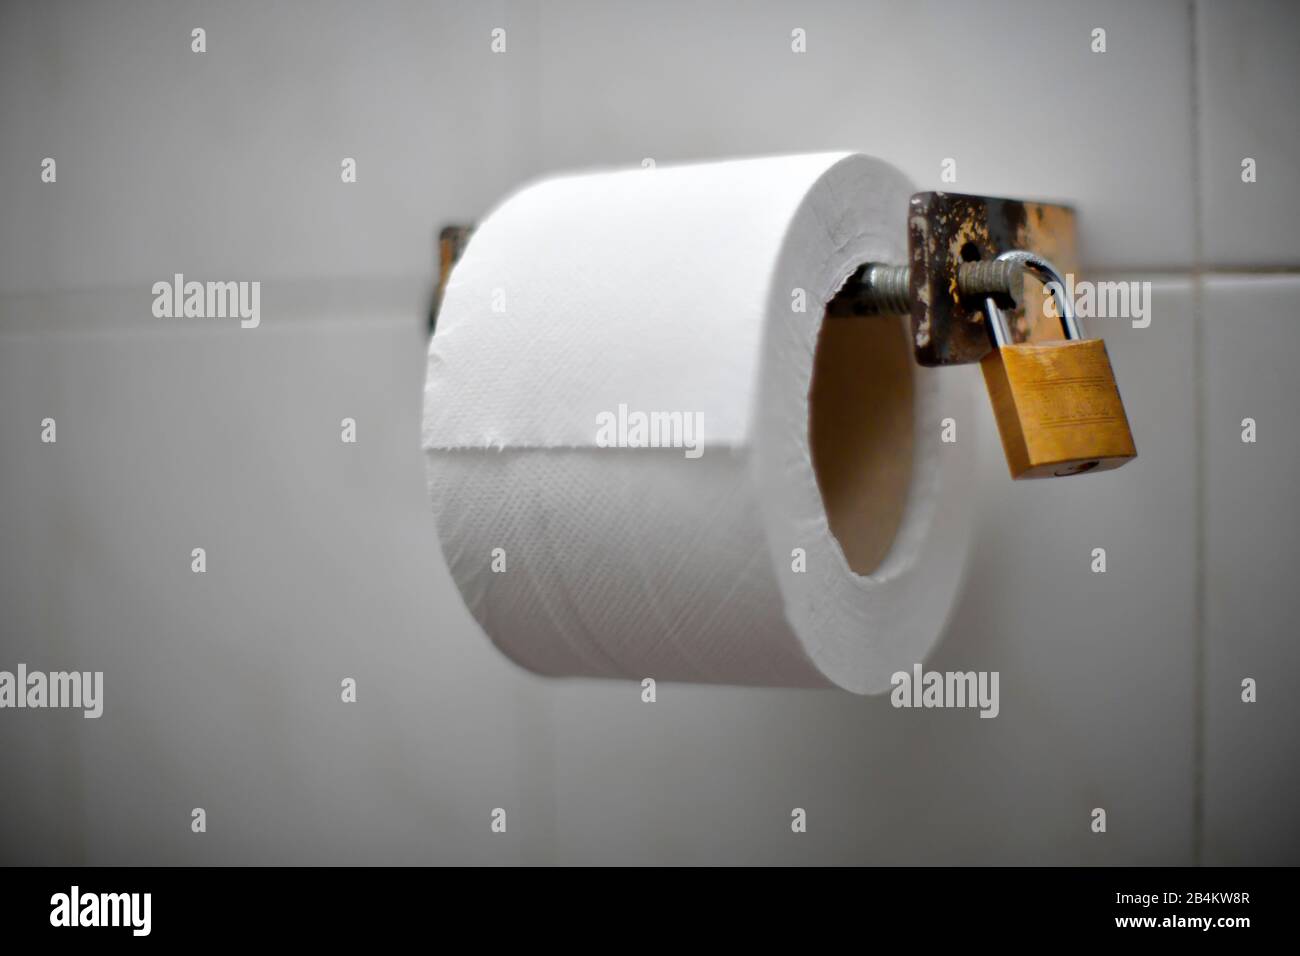 Rouleau de papier toilette fixé à l'aide d'un cadenas pour l'empêcher d'être retiré, île de Madère, Portugal Banque D'Images